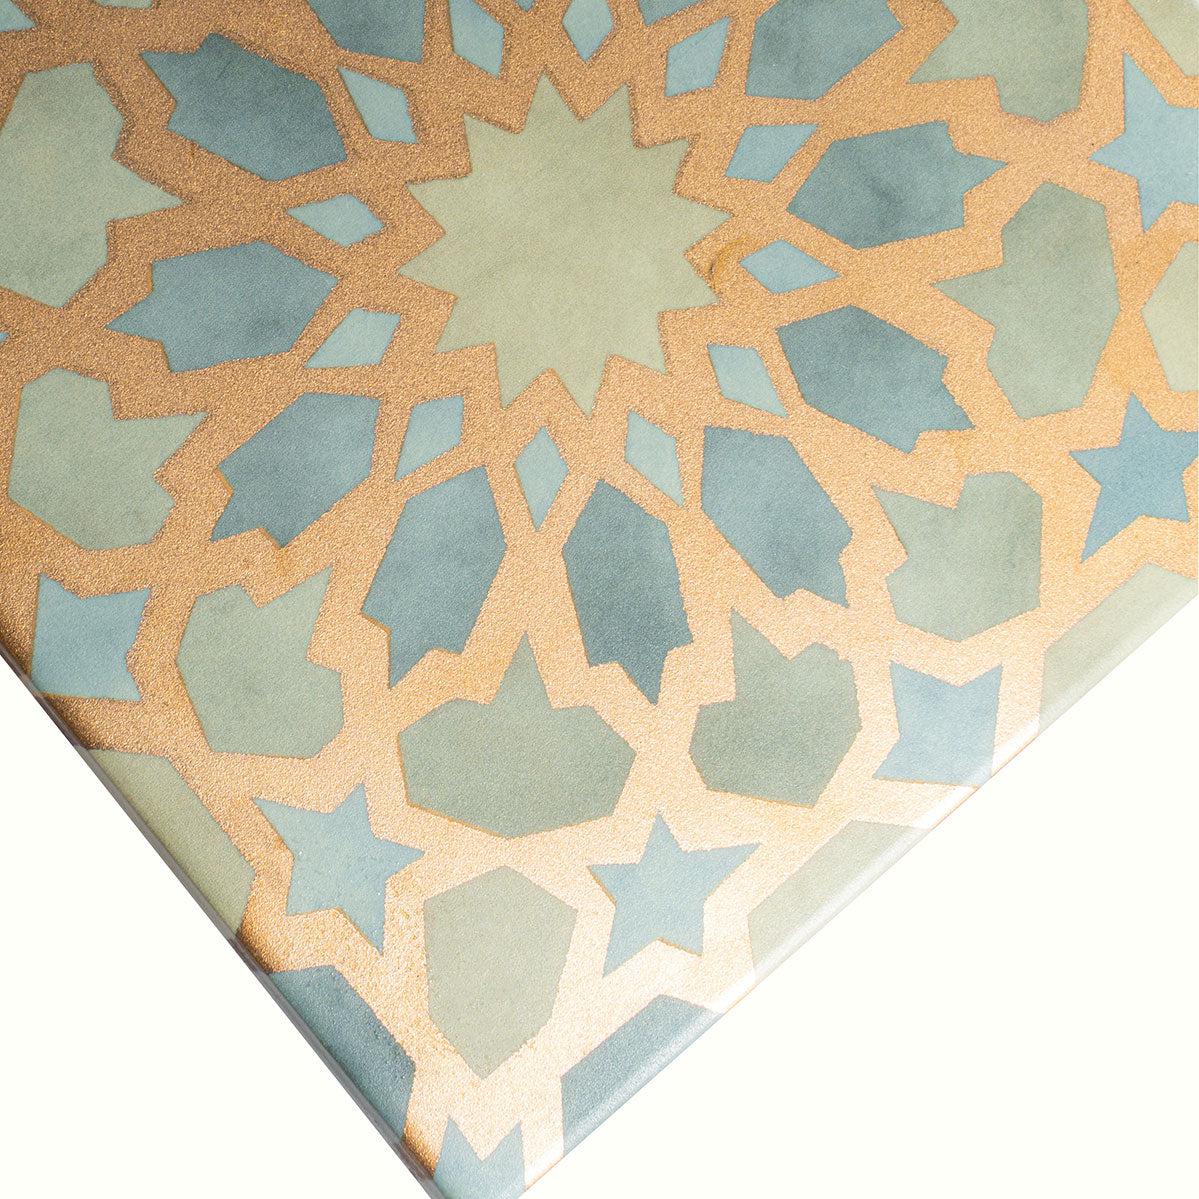 Amira Regal Green and Gold Patterned Porcelain Tile